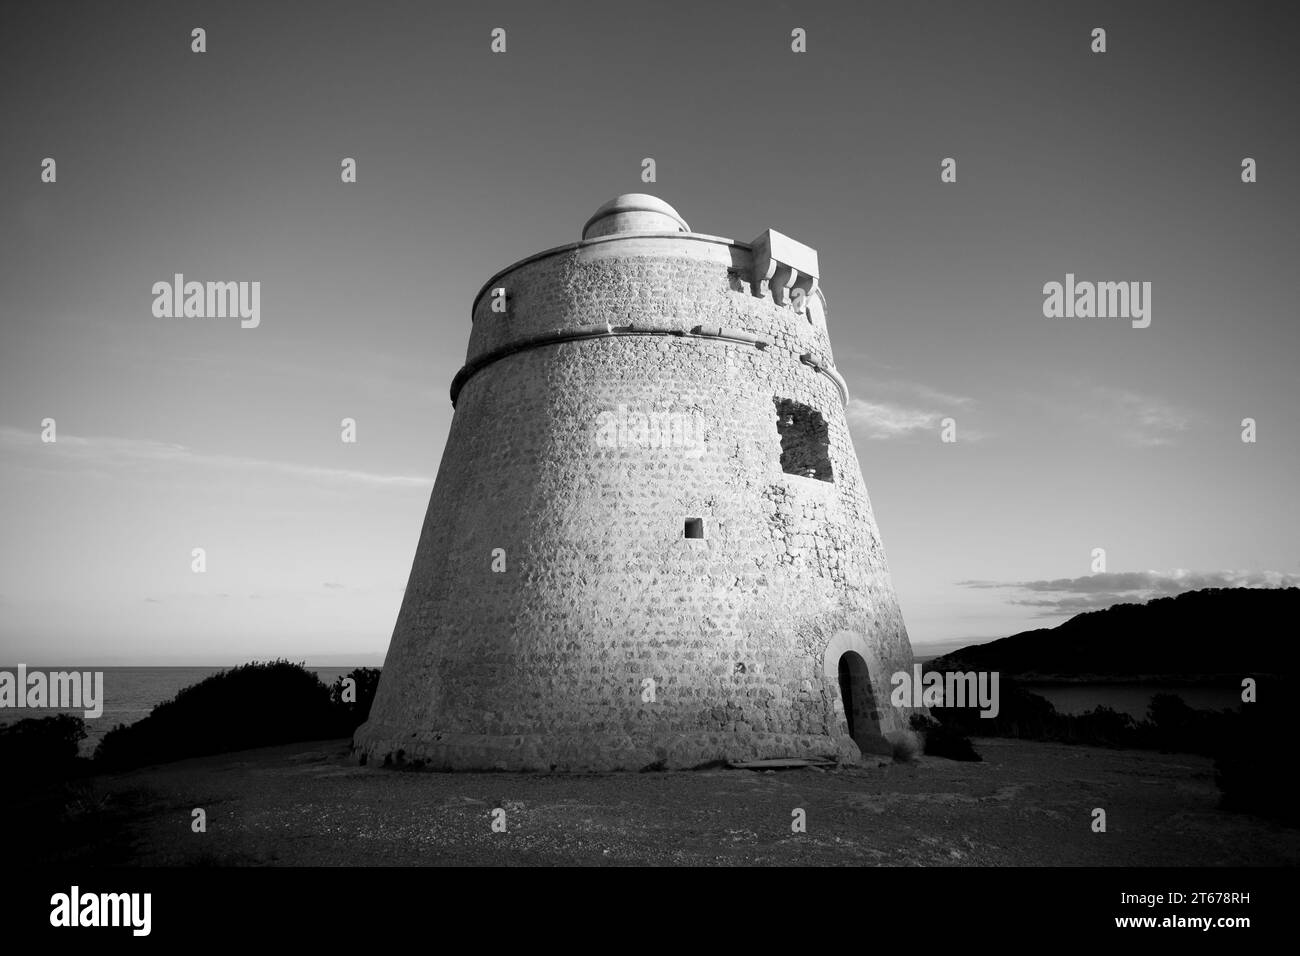 Der alte Verteidigungsturm befindet sich am Strand von SES Salines auf der Insel Ibiza, Spanien. Stockfoto